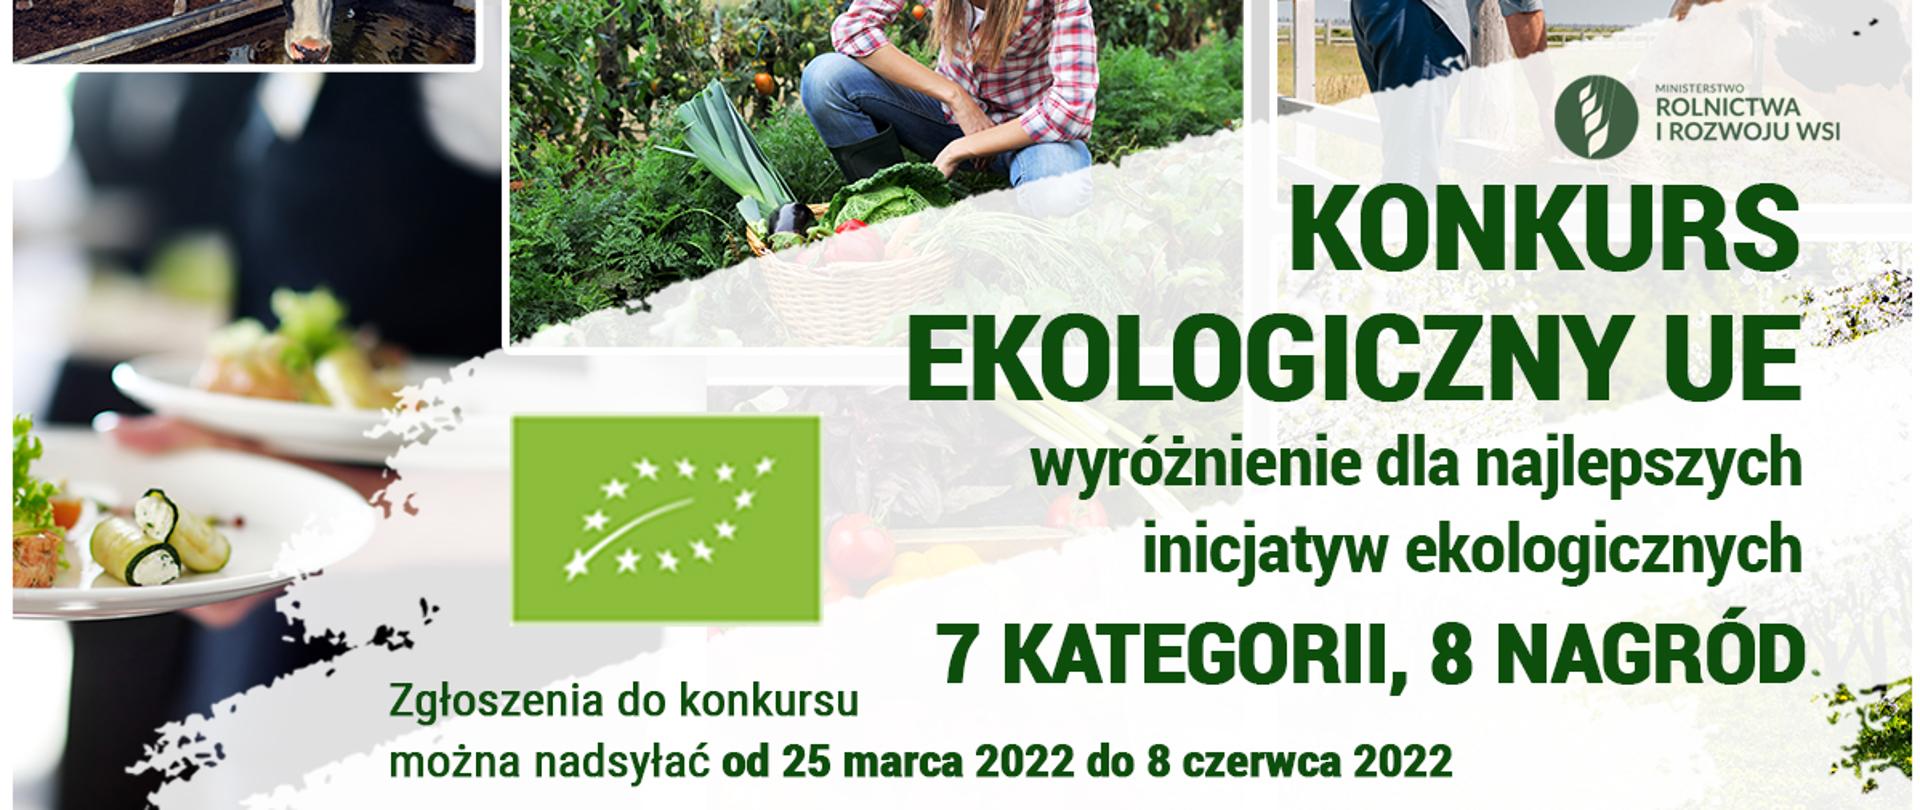 Dzień Rolnictwa Ekologicznego UE - baner promujący